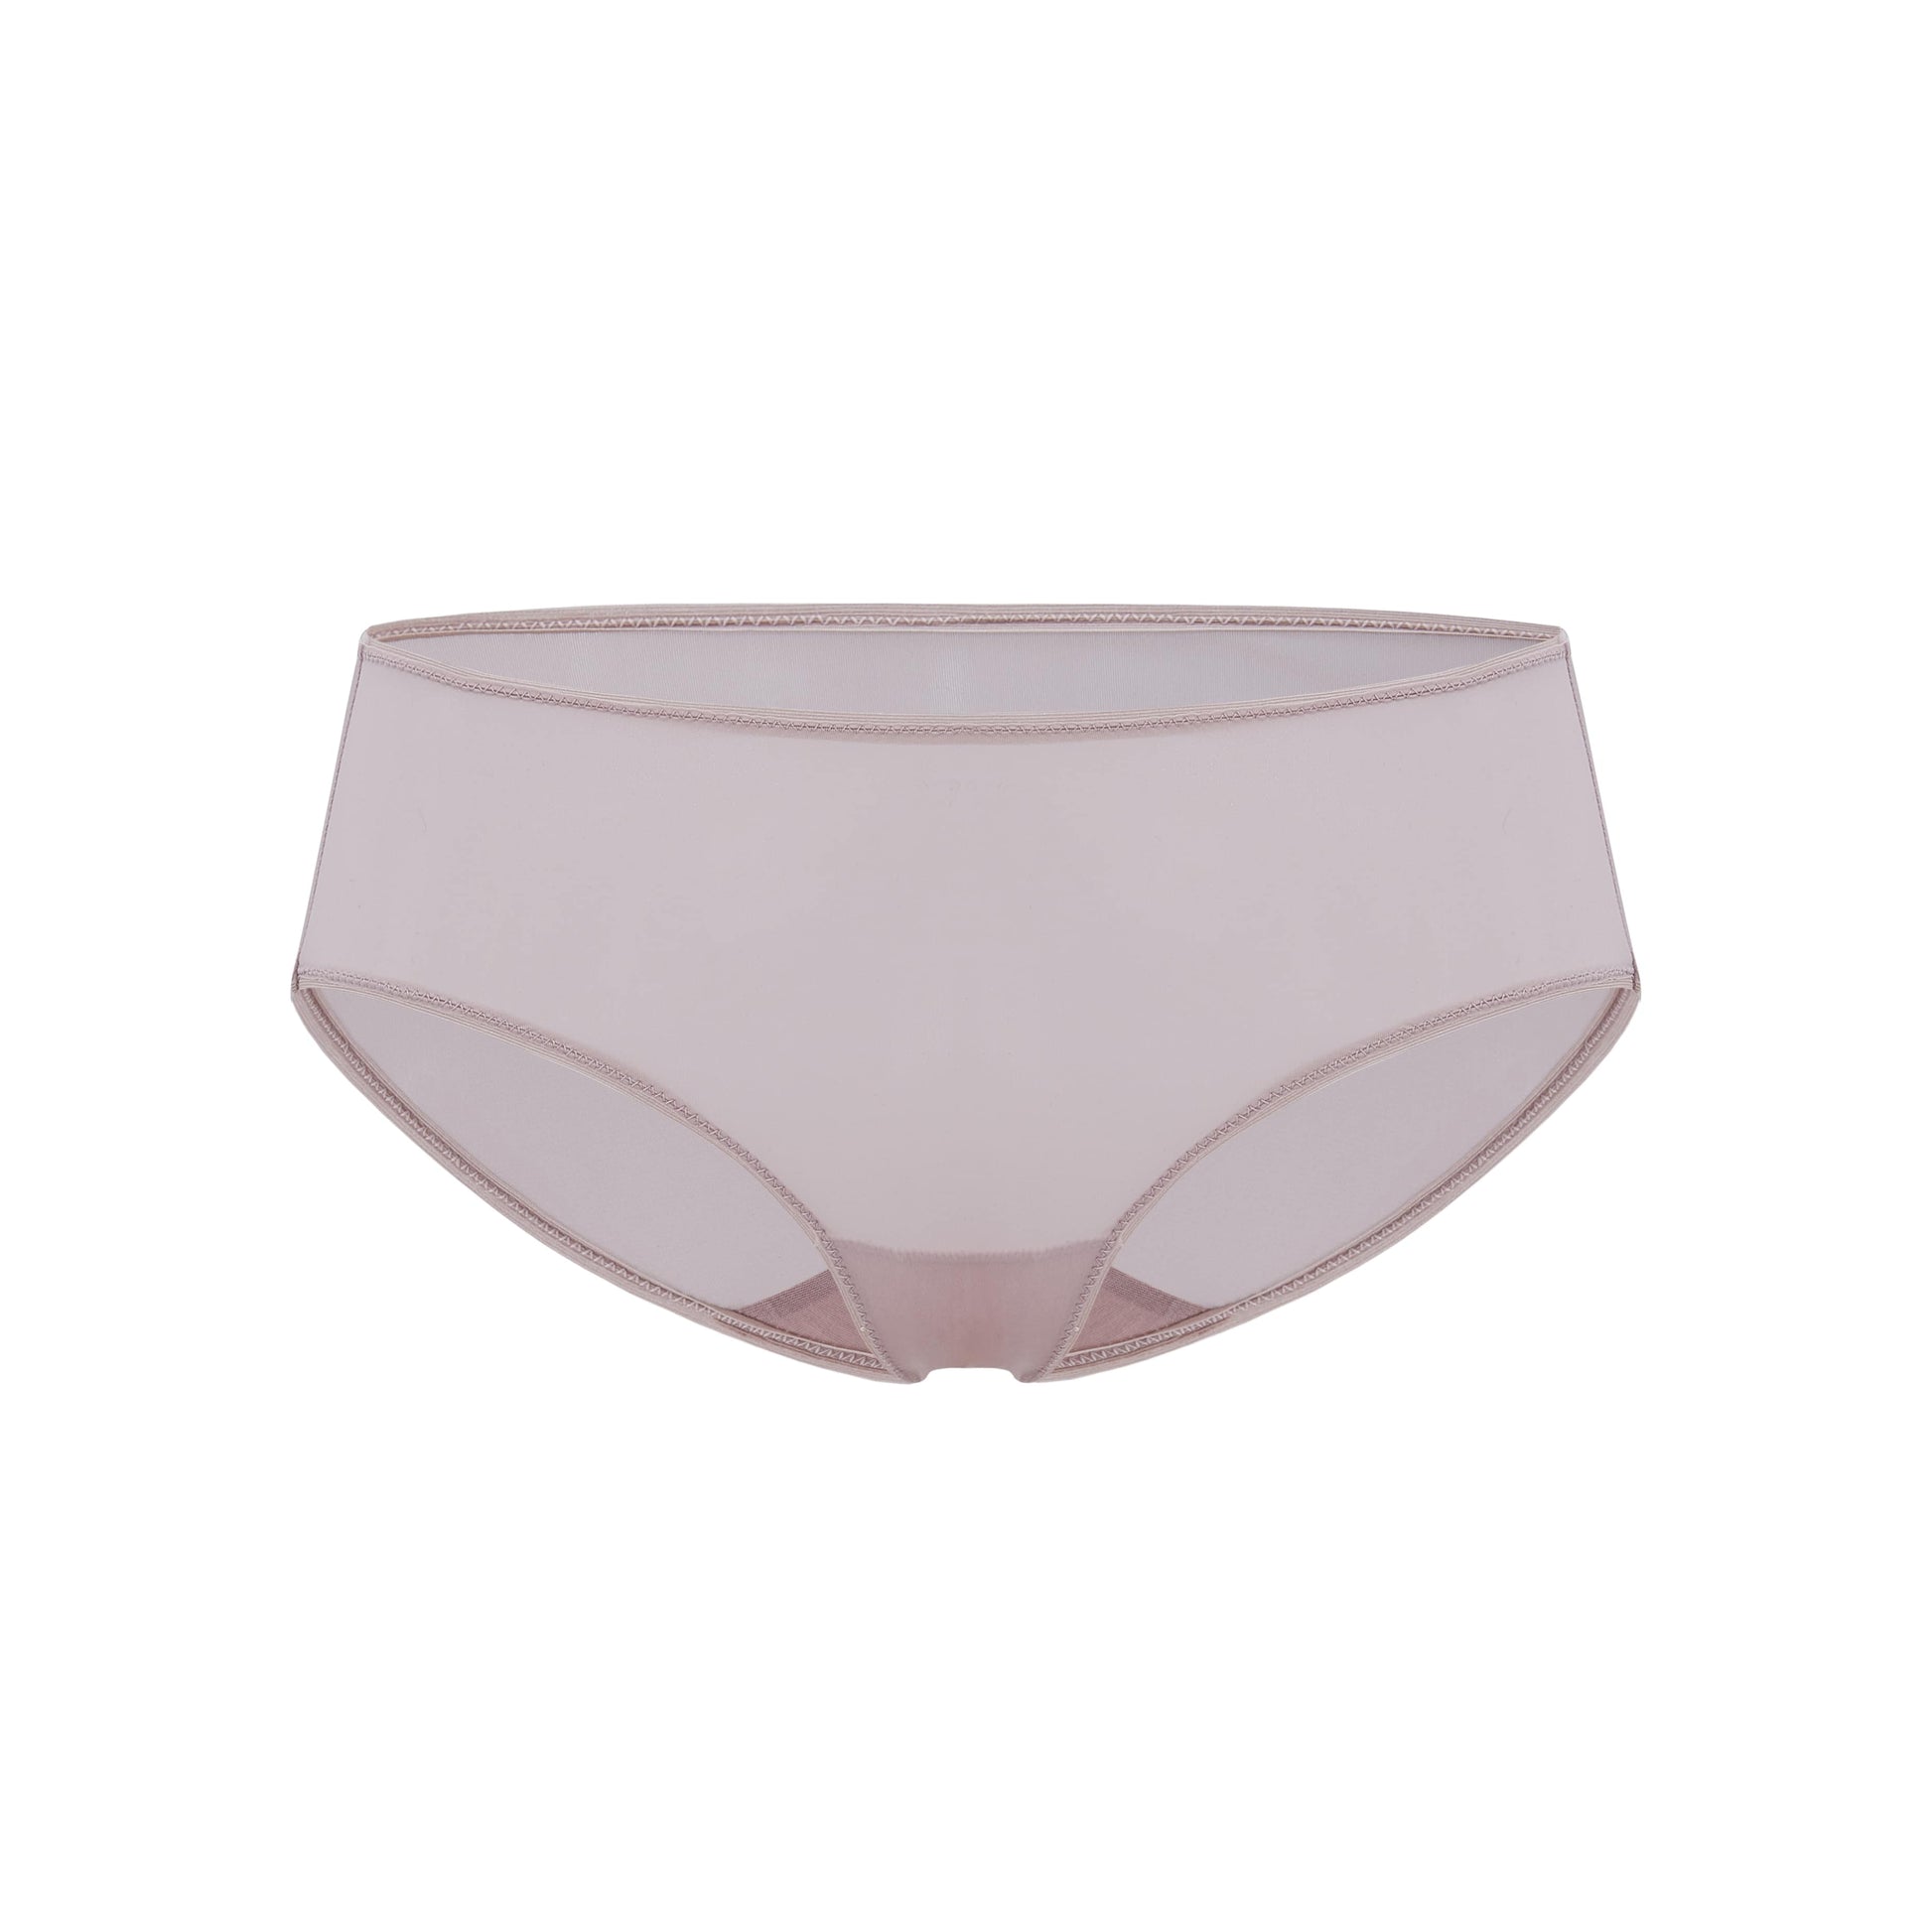 Women's Cotton Modal Brief Underwear in Light Nude size Medium